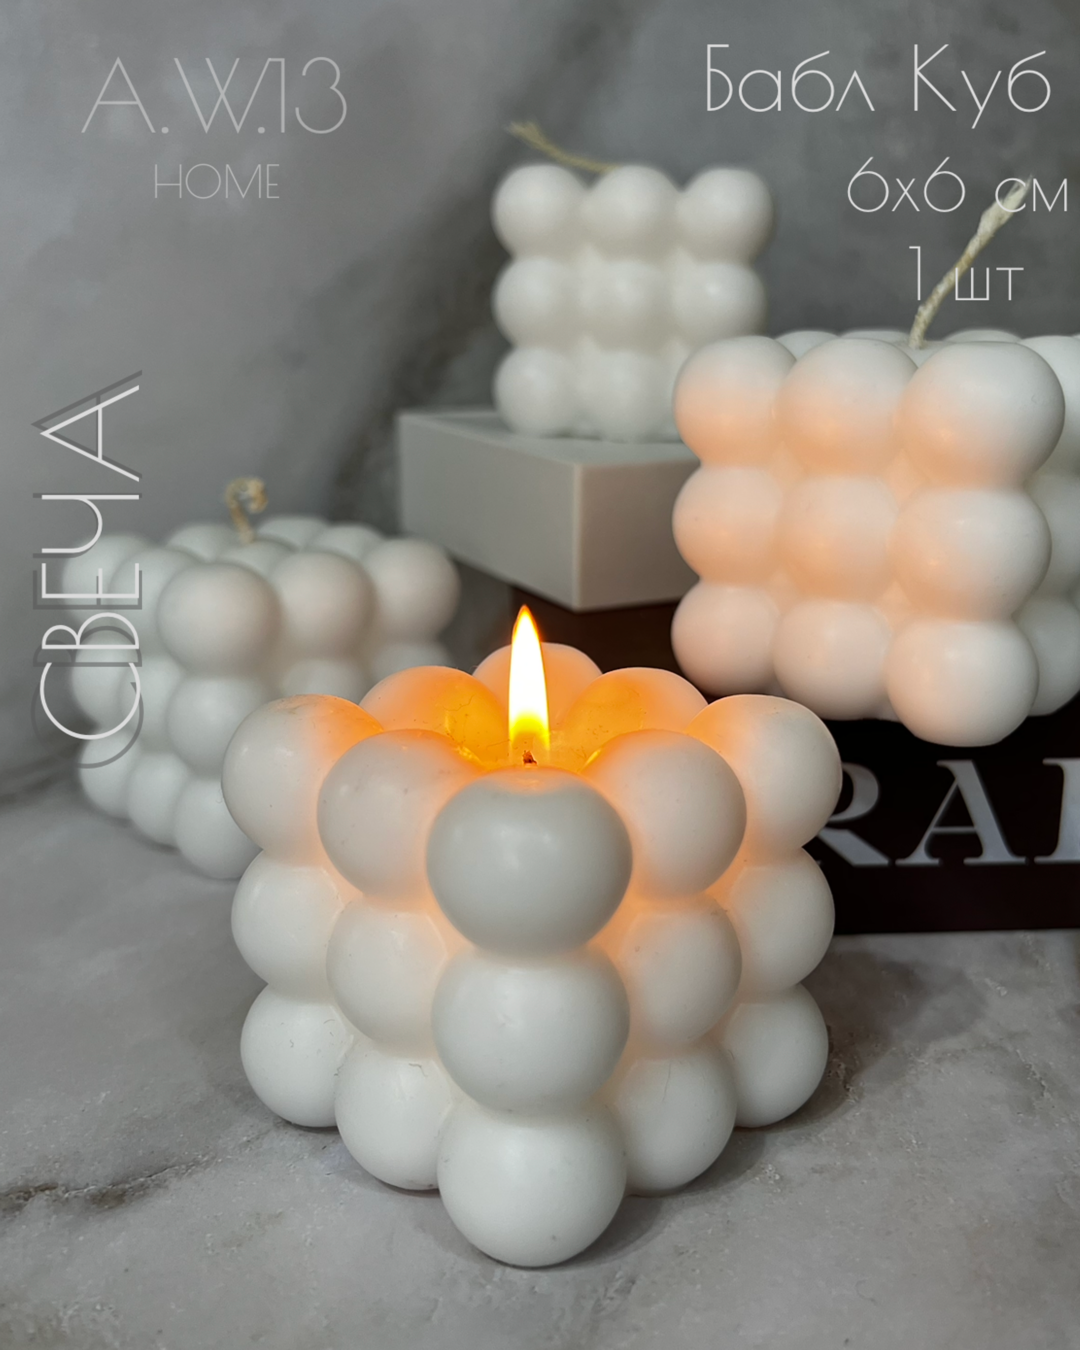 Свеча фигурная «Бабл Куб» белая, интерьерная свеча